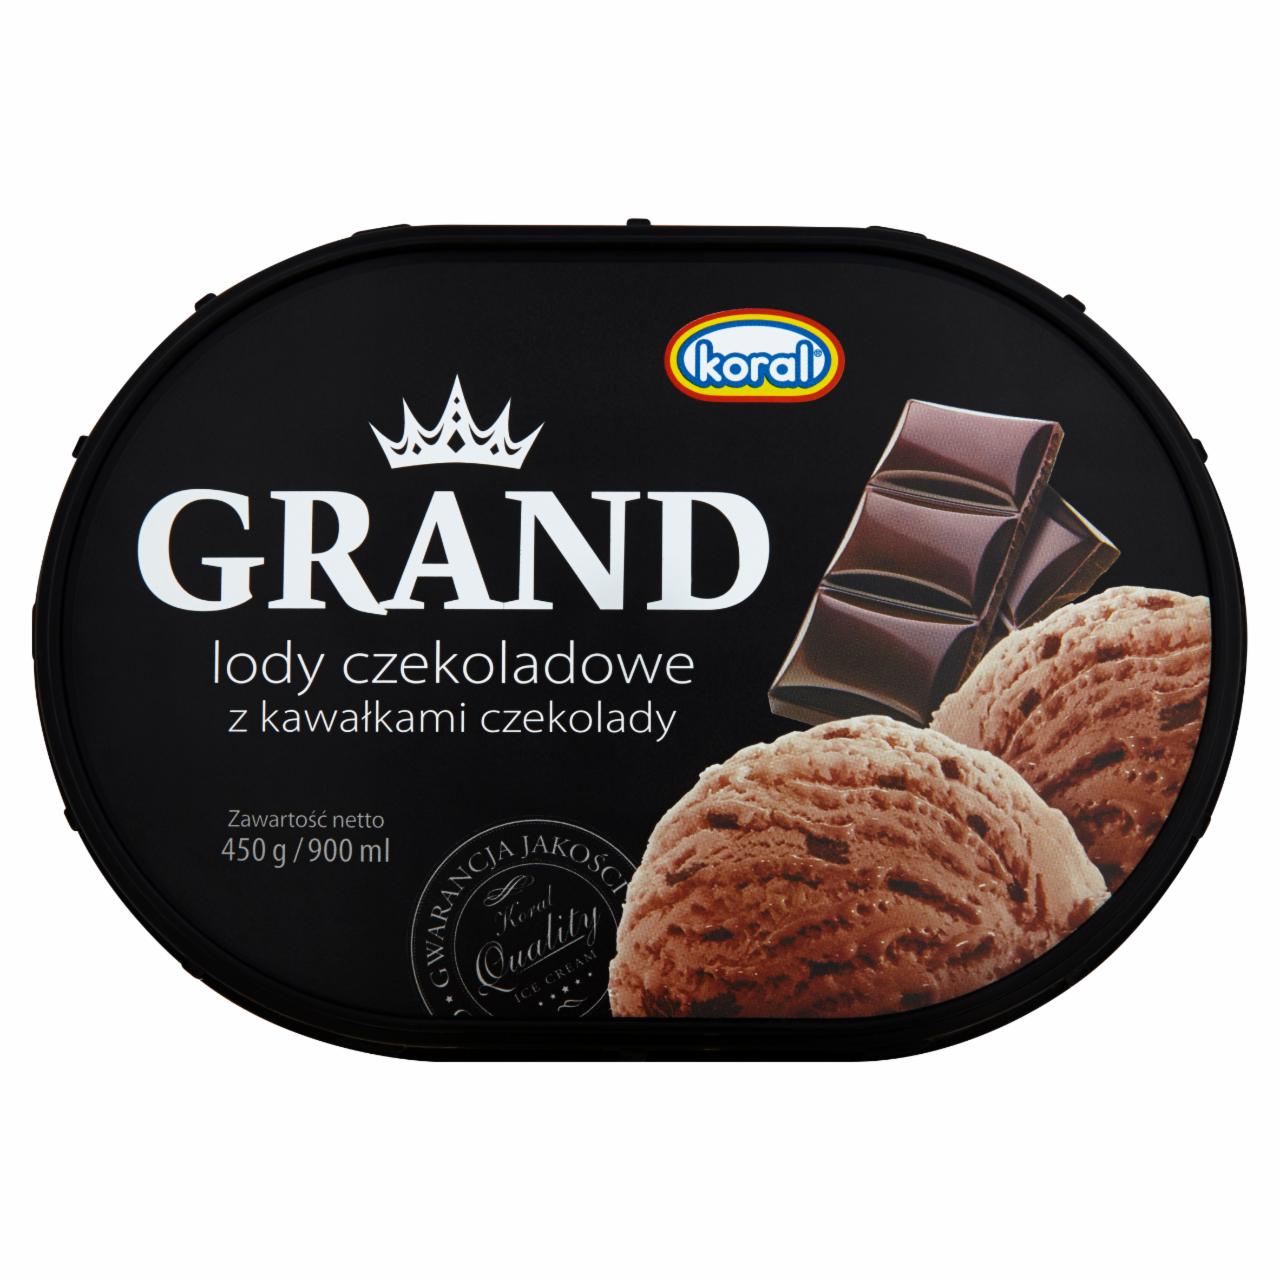 Zdjęcia - Koral Grand Lody czekoladowe z kawałkami czekolady 900 ml